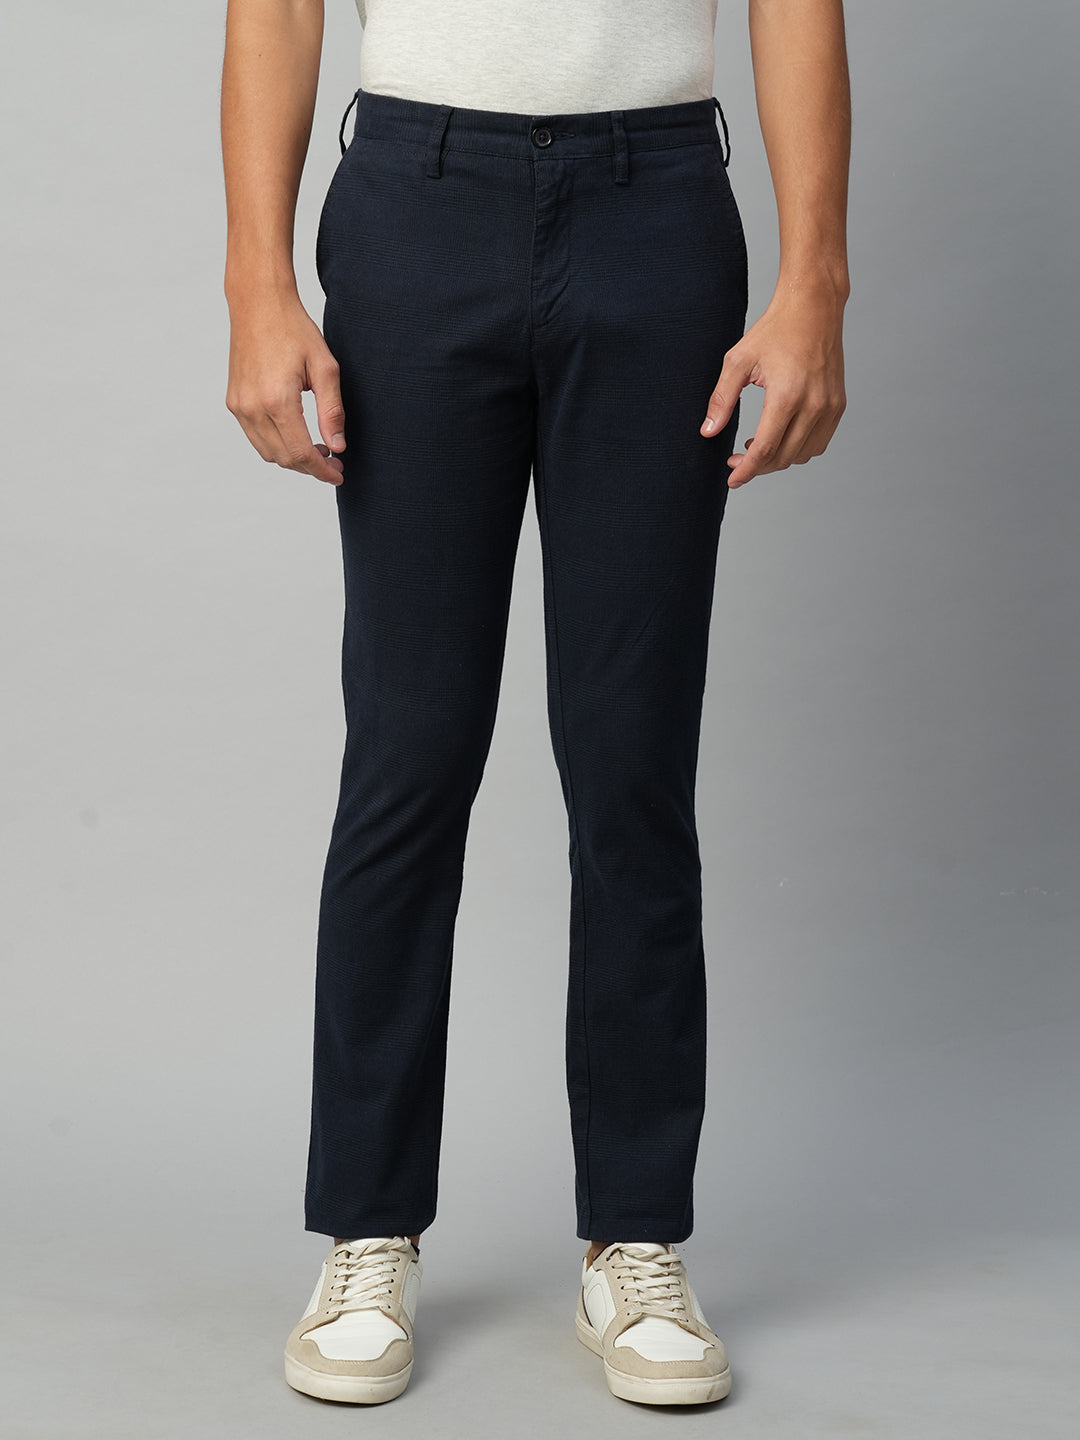 Buy Men's Cotton Spandex Casual Wear Slim Fit Pant